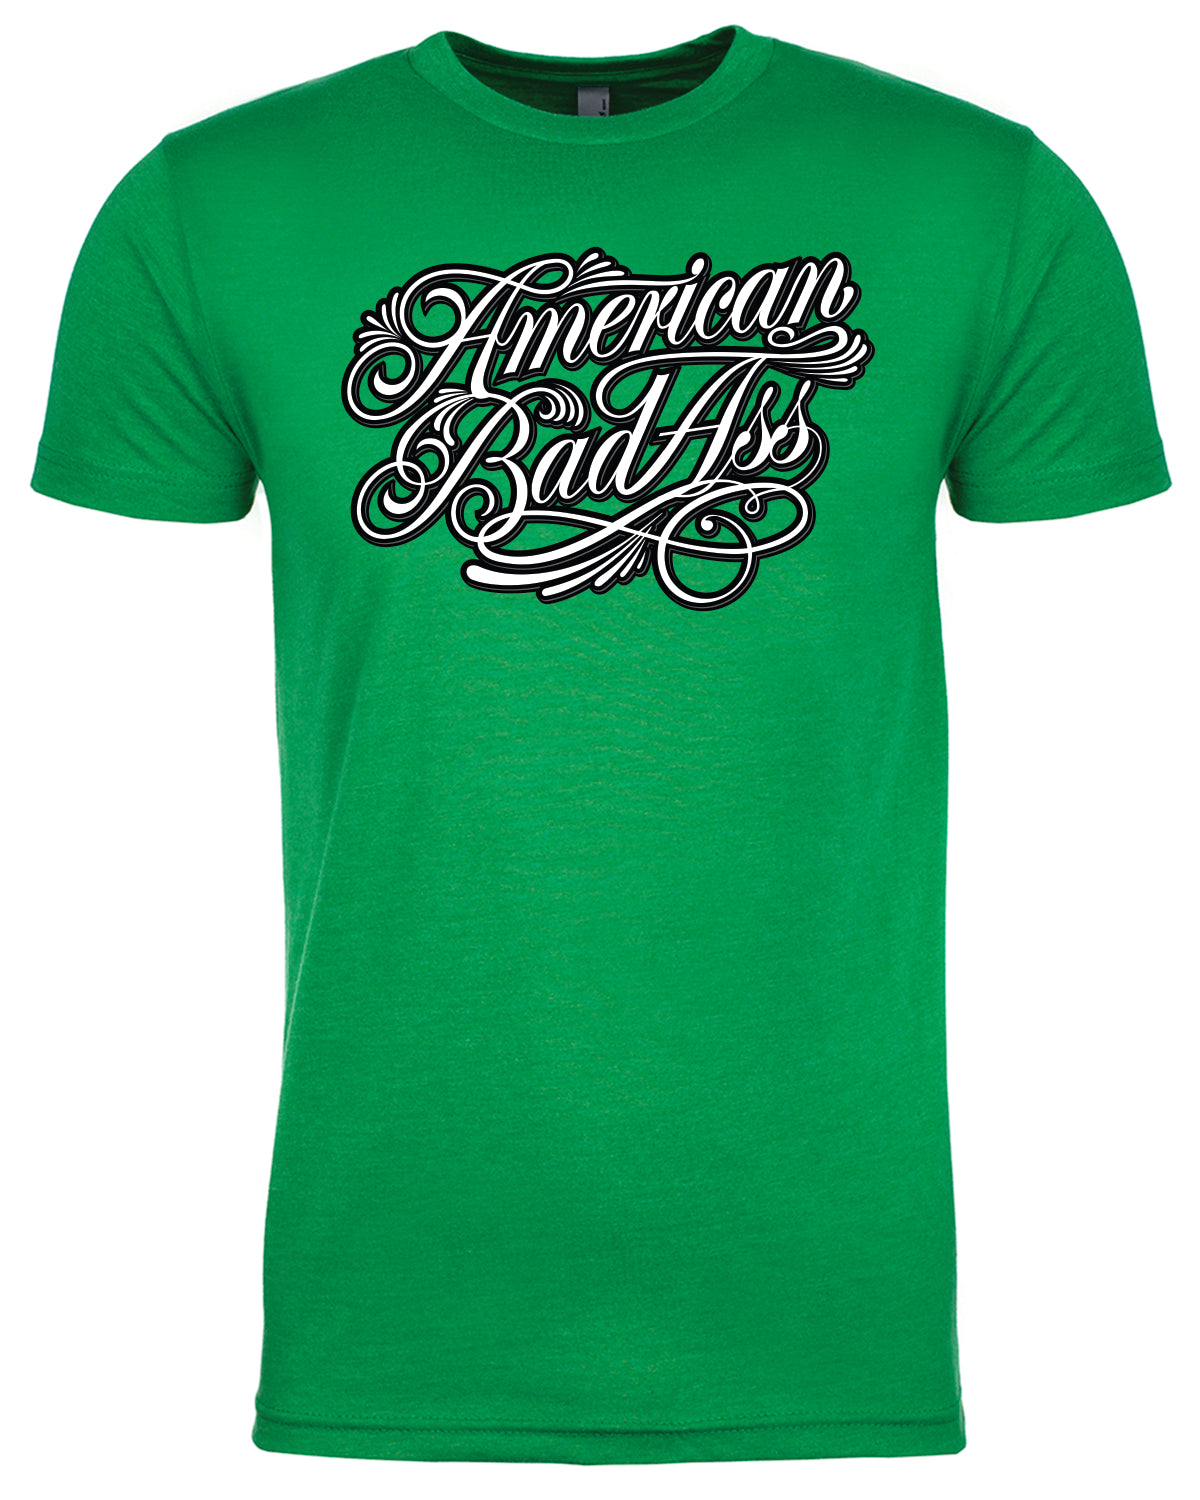 American Badass T-shirt